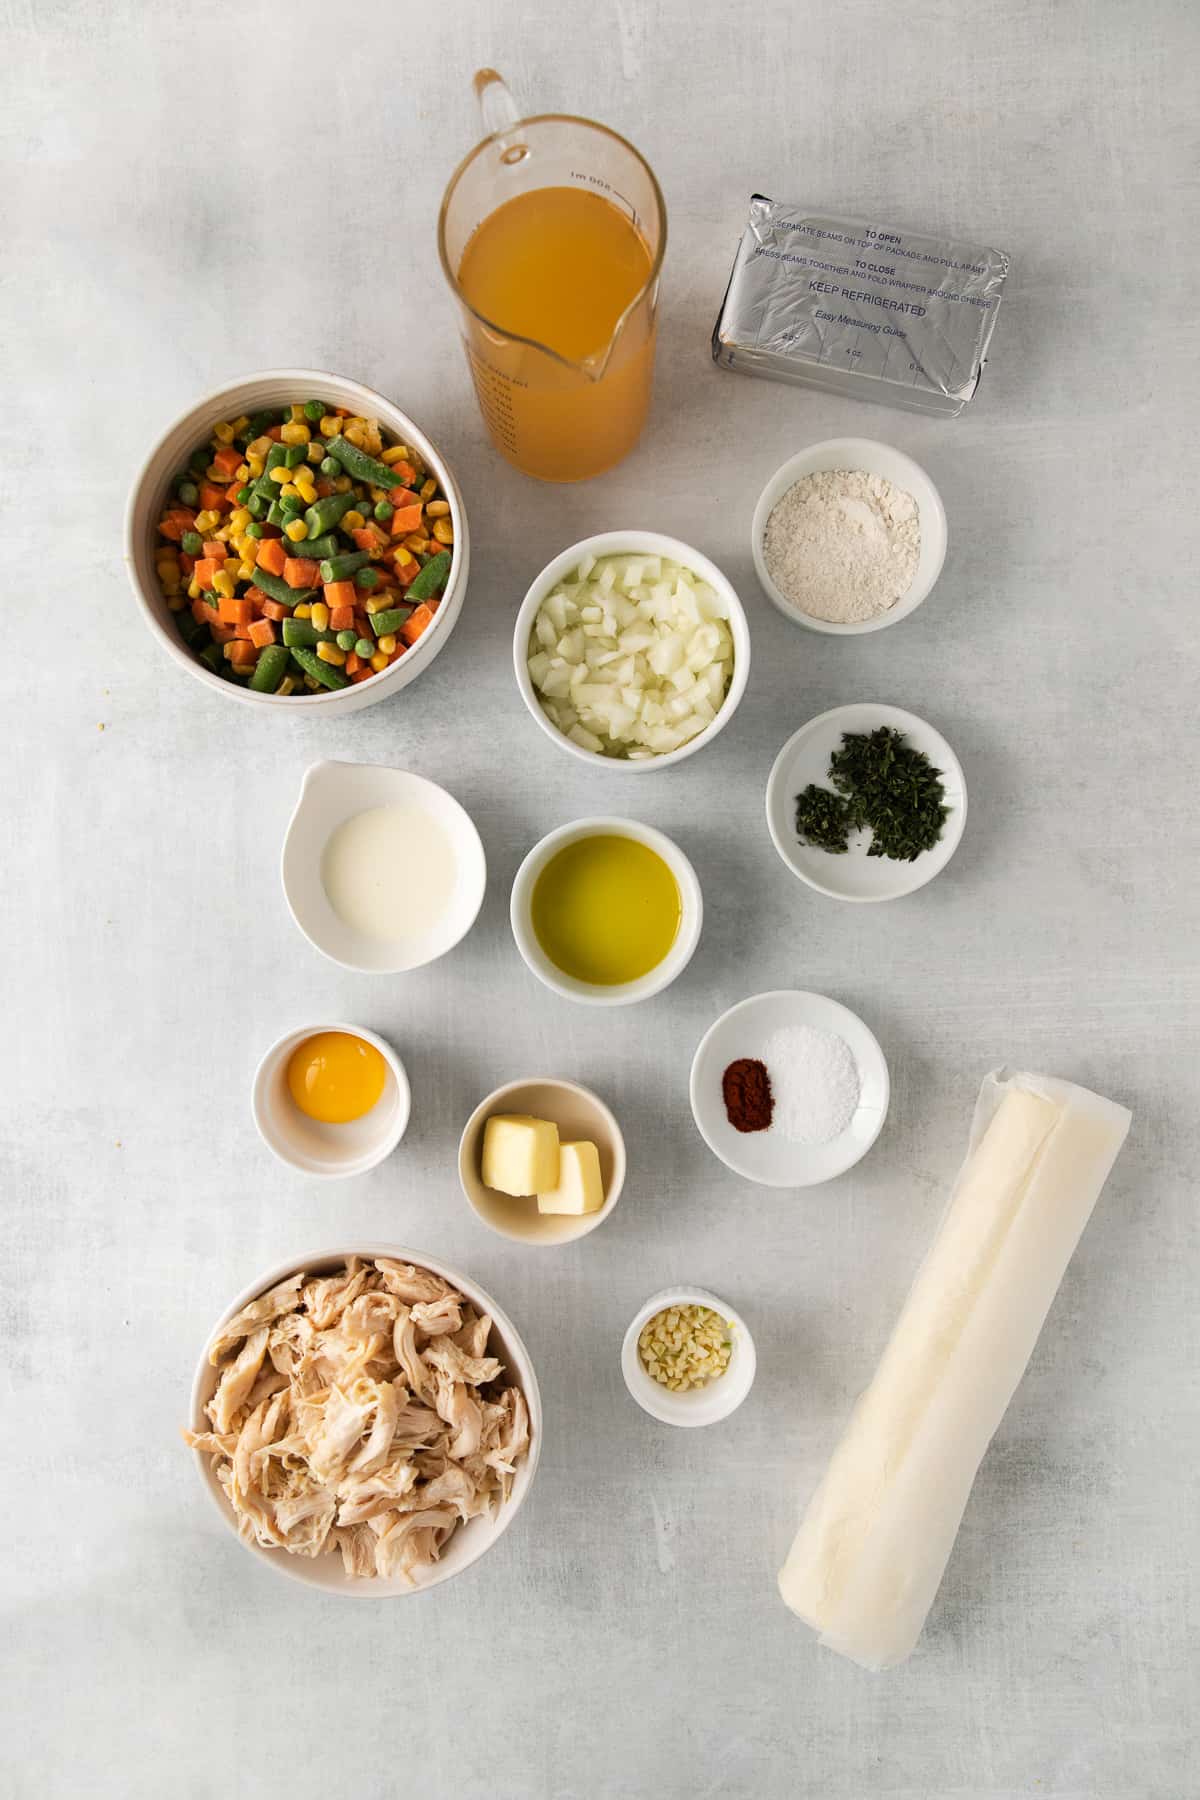 Ingredients for chicken pot pie casserole.